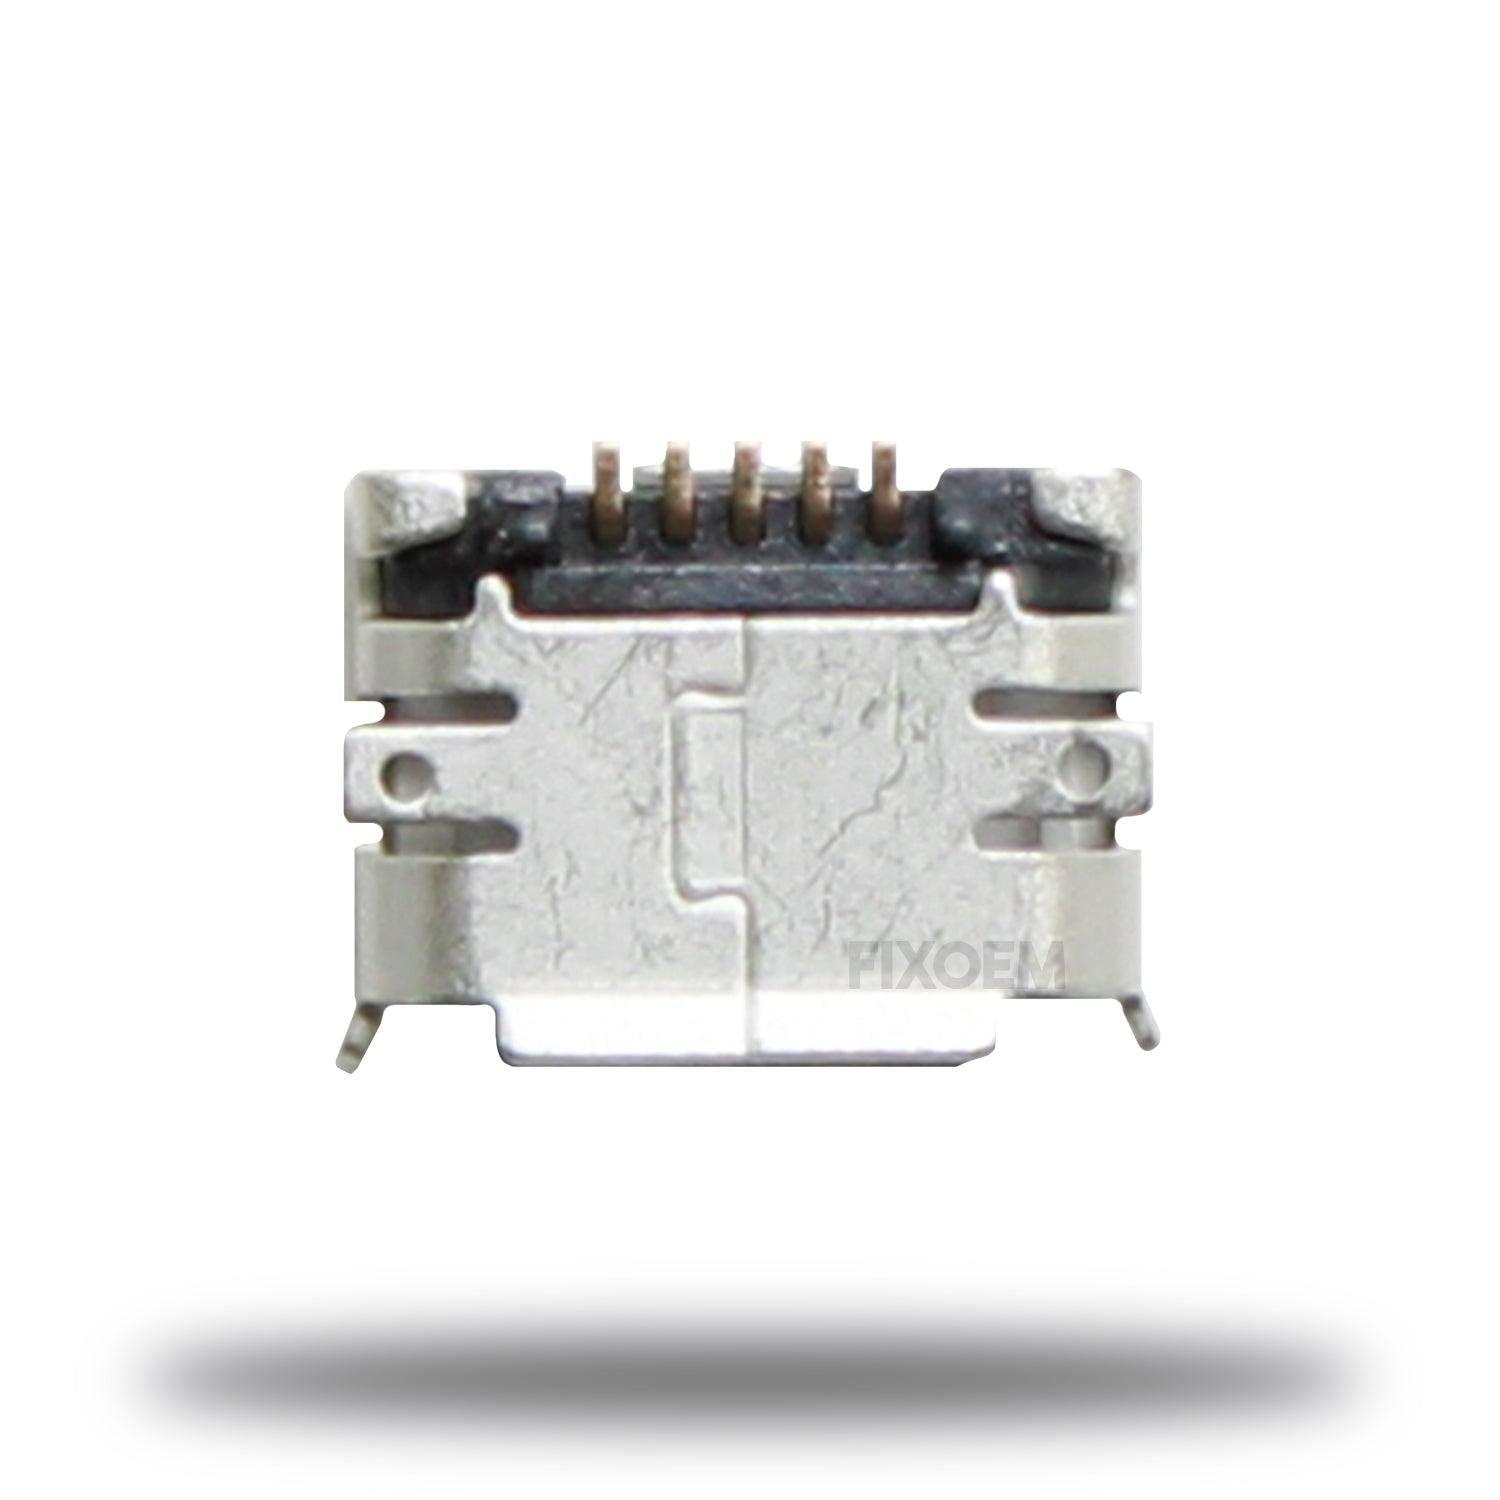 Pin Carga Usb V8 Chino Generico Universal a solo $ 20.00 Refaccion y puestos celulares, refurbish y microelectronica.- FixOEM